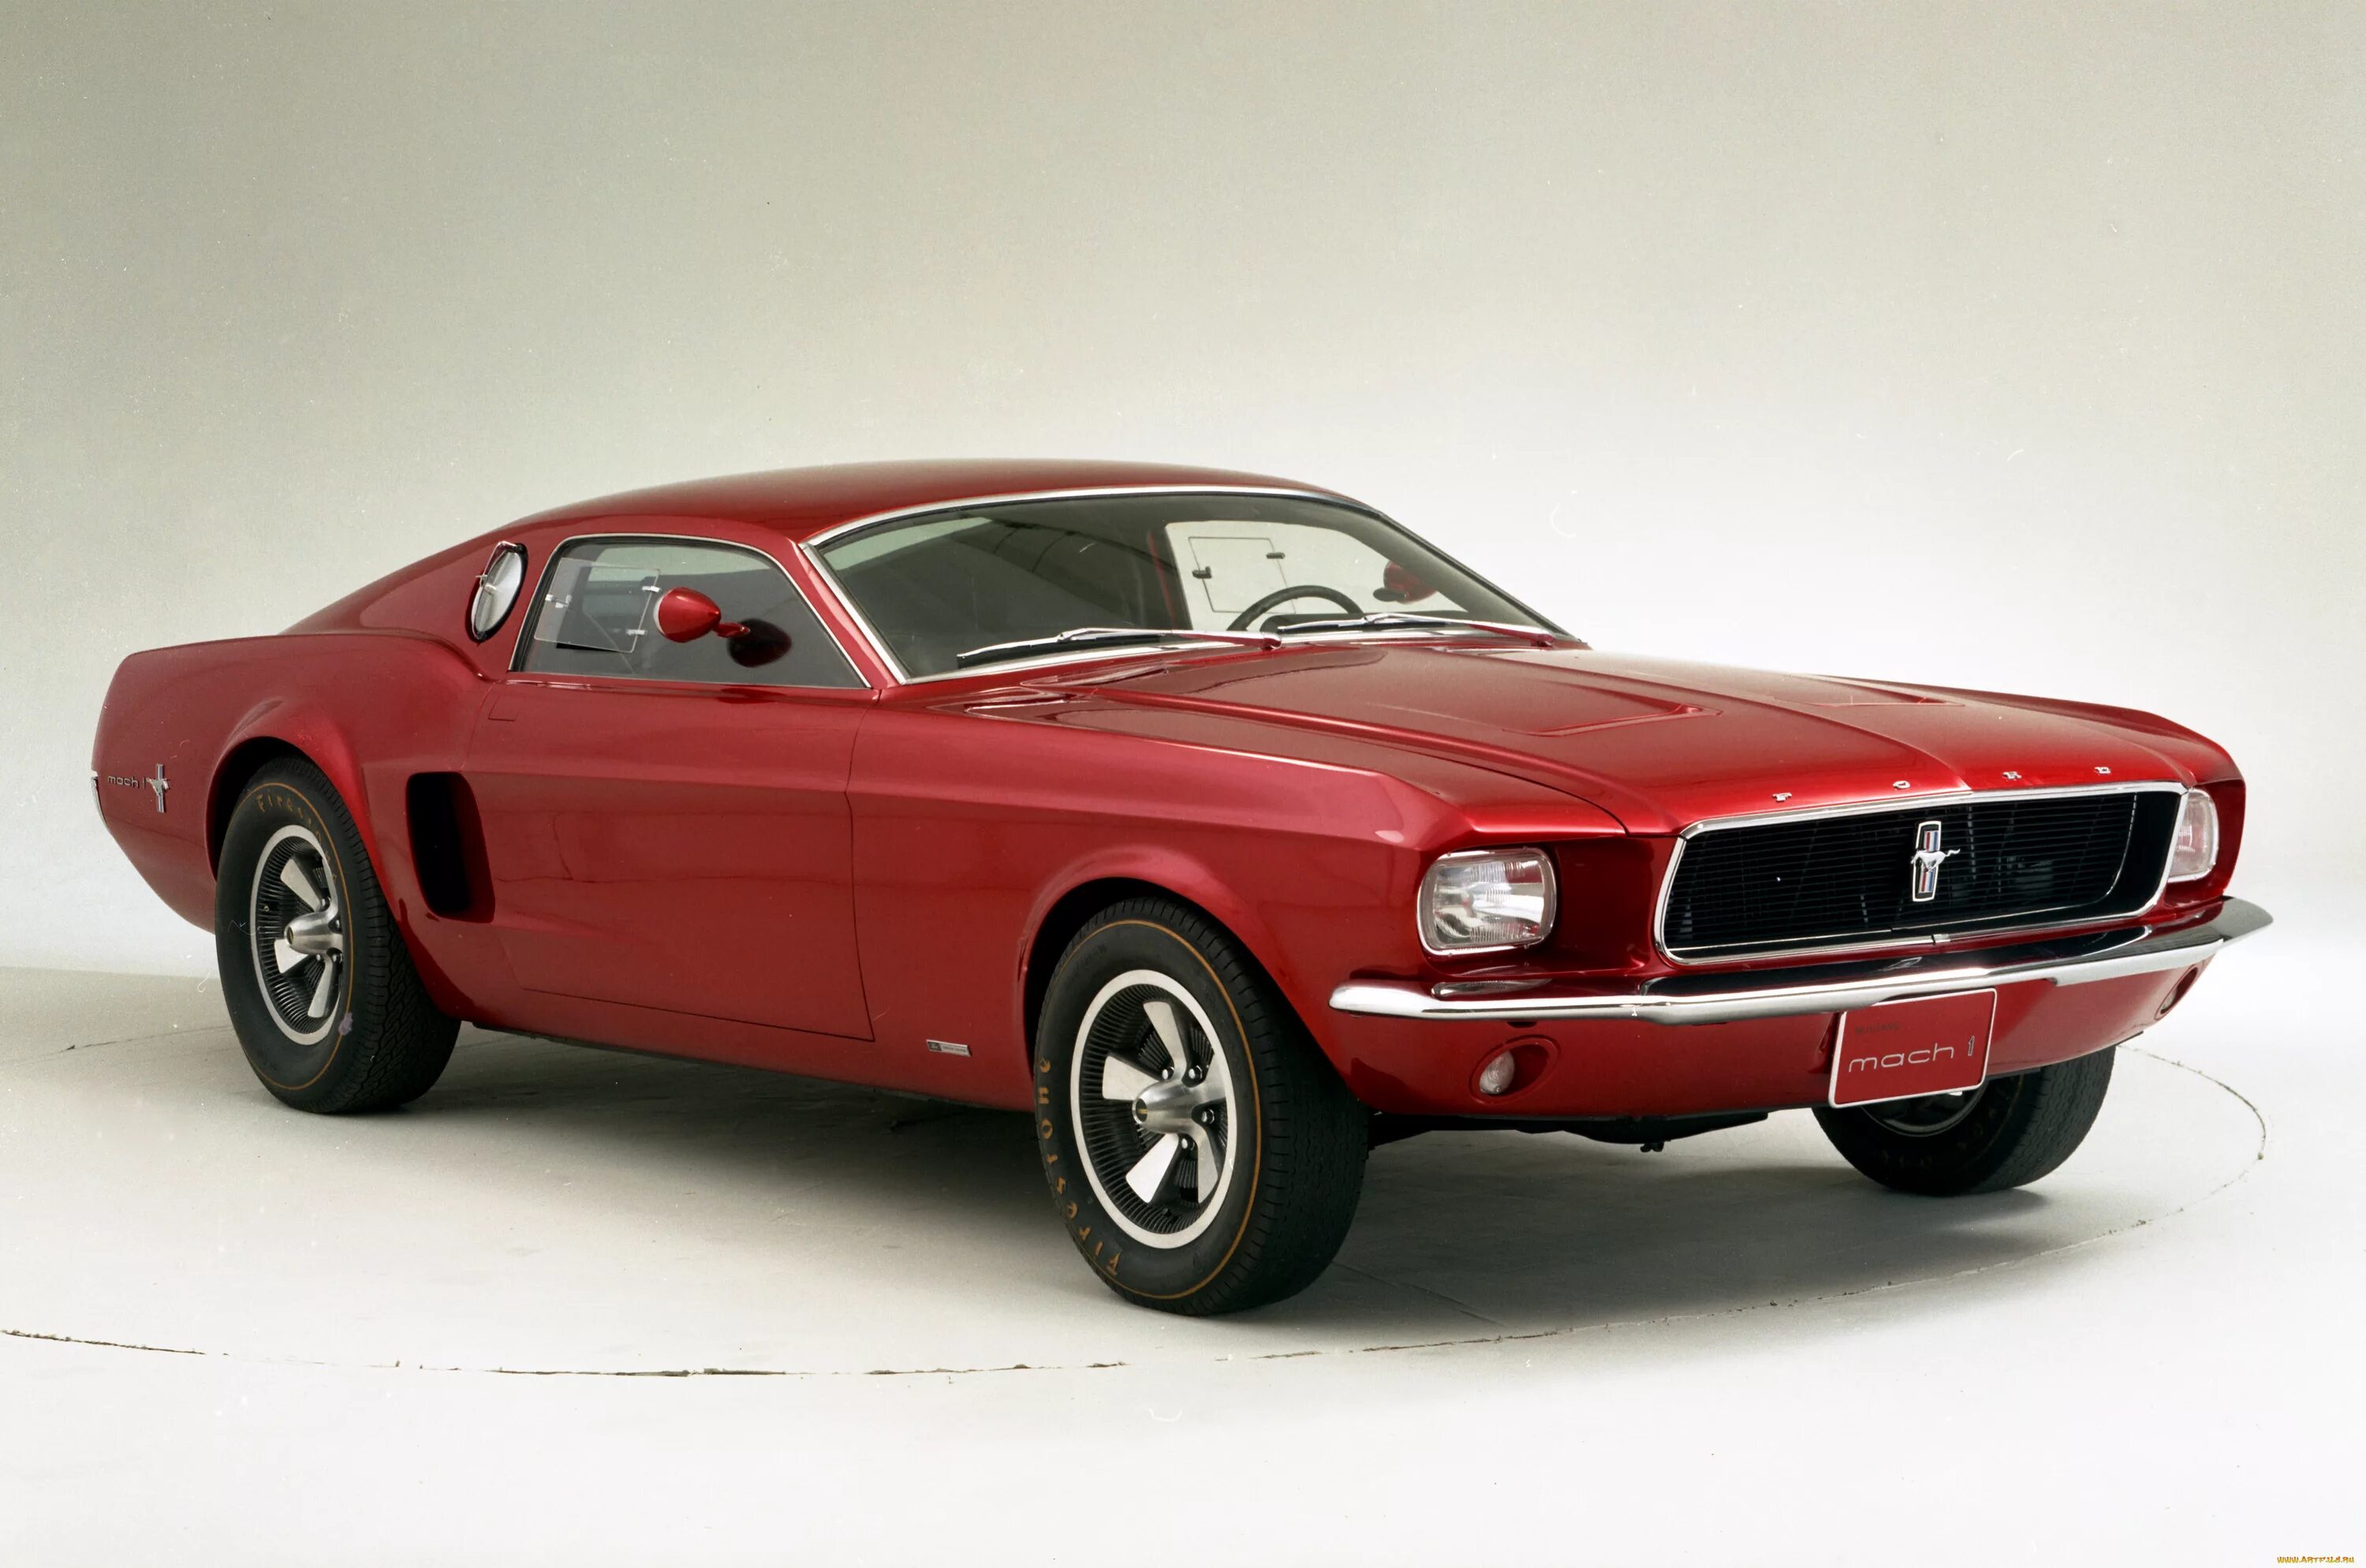 Ford Mustang Mach 1. 1966 Ford Mustang Mach 1. Ford Mustang Mach 1 1967. Красный Ford Mustang 1966. Первые мустанги